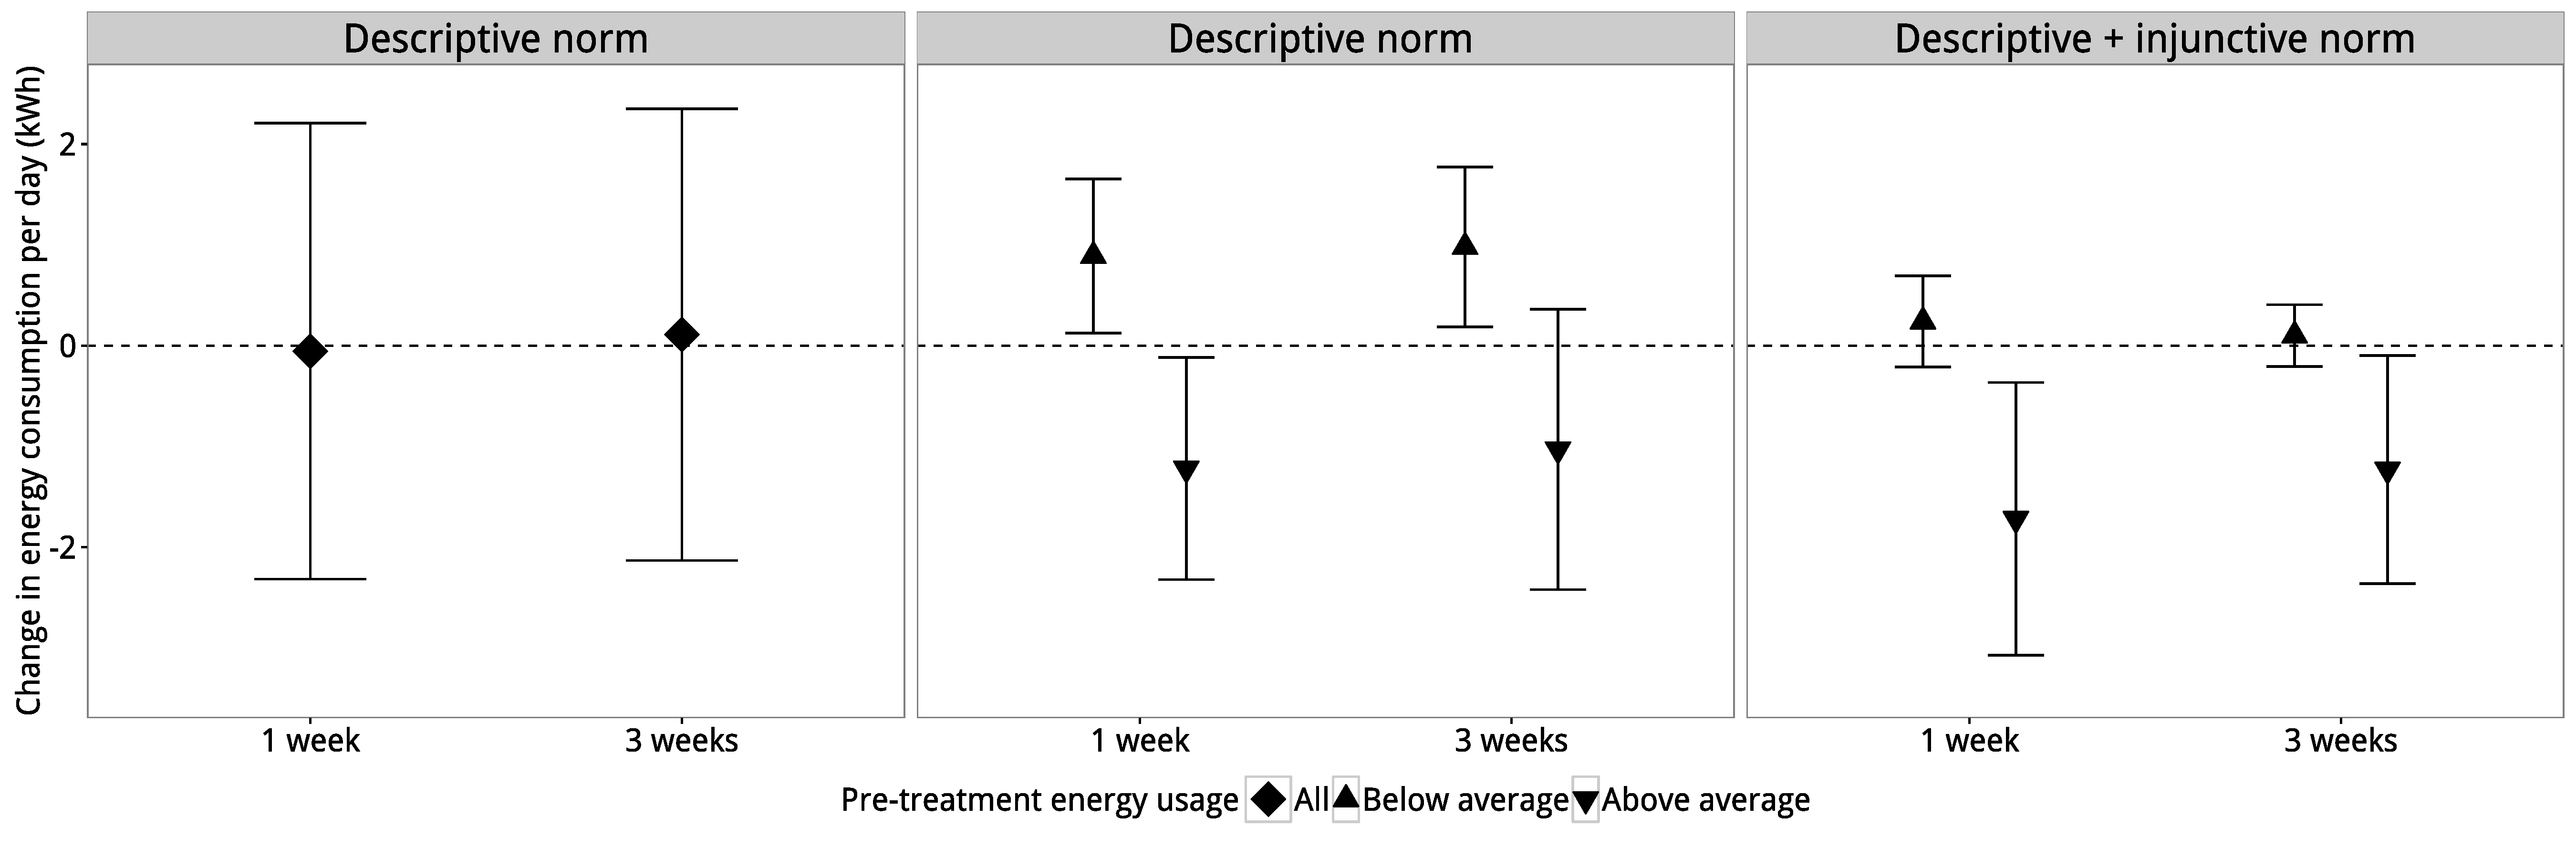 Slika 4.4: Rezultati Schultz et al. (2007). Panel (a) pokazuje da tretman deskriptivne norme ima procijenjeni efekat nultog prosjeka. Međutim, panel (b) pokazuje da je ovaj prosečni efekat tretmana zapravo sastavljen od dva efekta pomeranja. Za teške korisnike, tretman je smanjio upotrebu, ali za lake korisnike, tretman je povećao upotrebu. Na kraju, panel (c) pokazuje da je drugi tretman, koji je koristio deskriptivne i sudske norme, imao otprilike isti efekat na teške korisnike, ali je ublažio efekat boomeranga na lake korisnike. Adaptirano od Schultz et al. (2007).